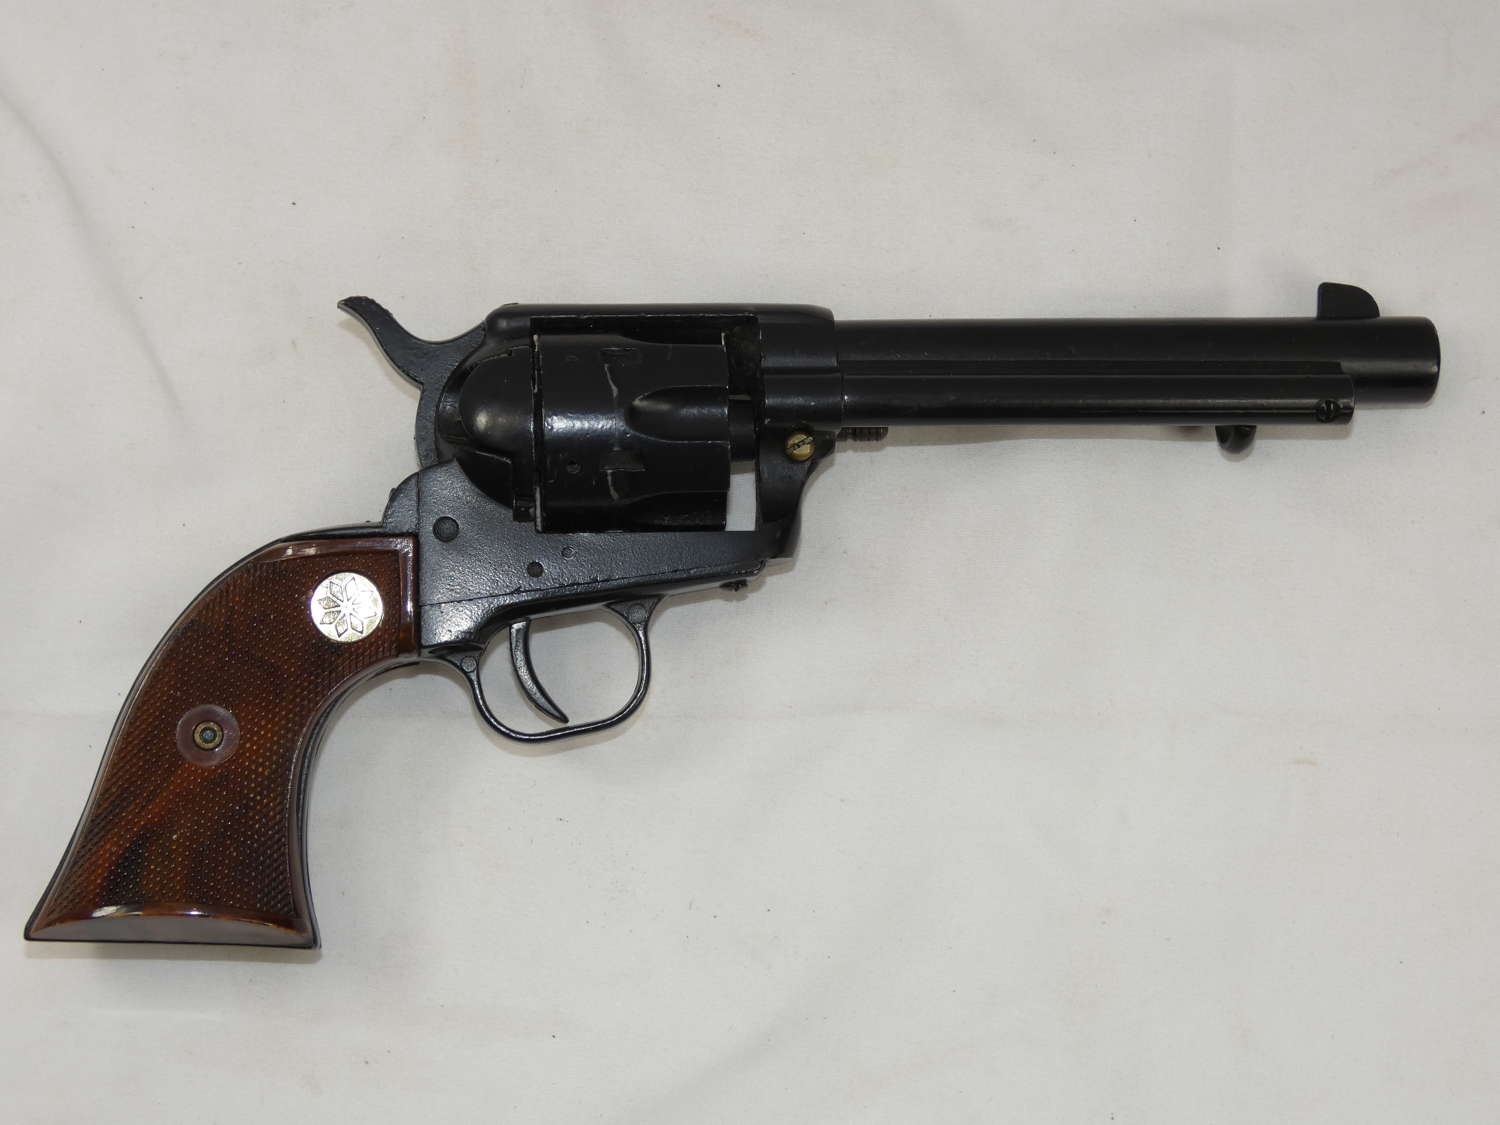 Colt 45 Peacemaker Blank Firing Replica Gun